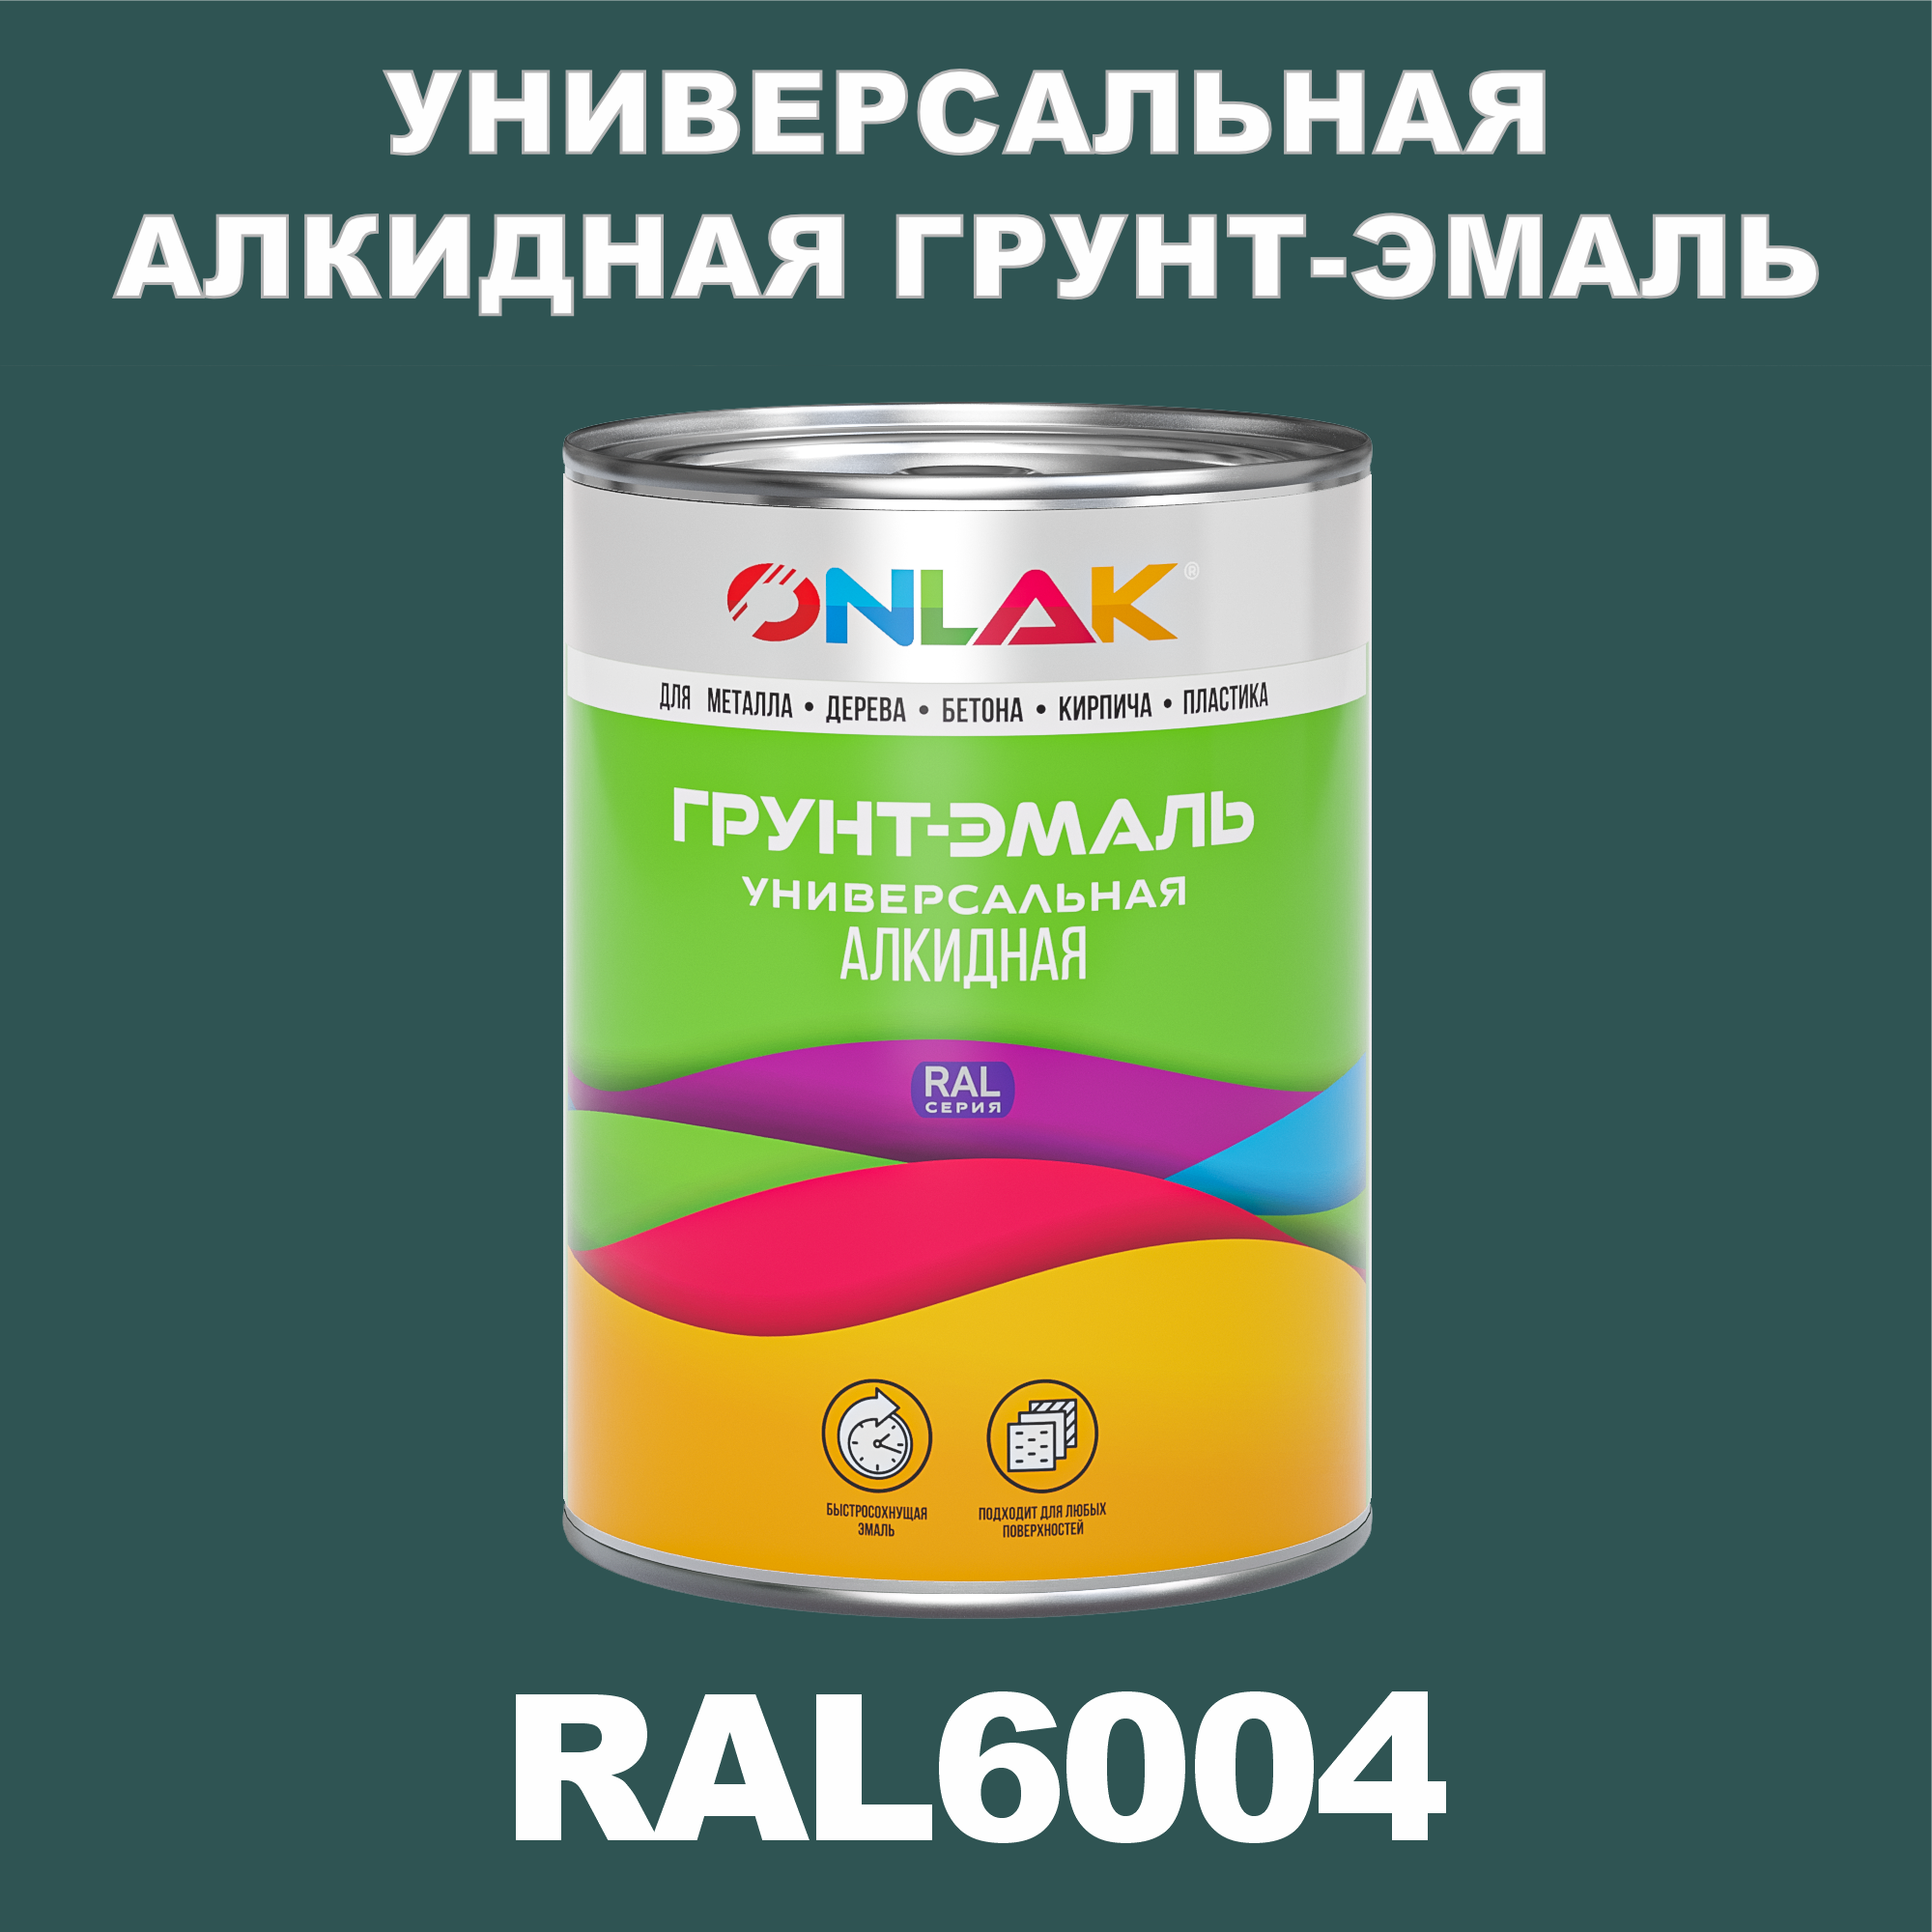 Грунт-эмаль ONLAK 1К RAL6004 антикоррозионная алкидная по металлу по ржавчине 1 кг грунт эмаль yollo по ржавчине алкидная зеленая 0 9 кг